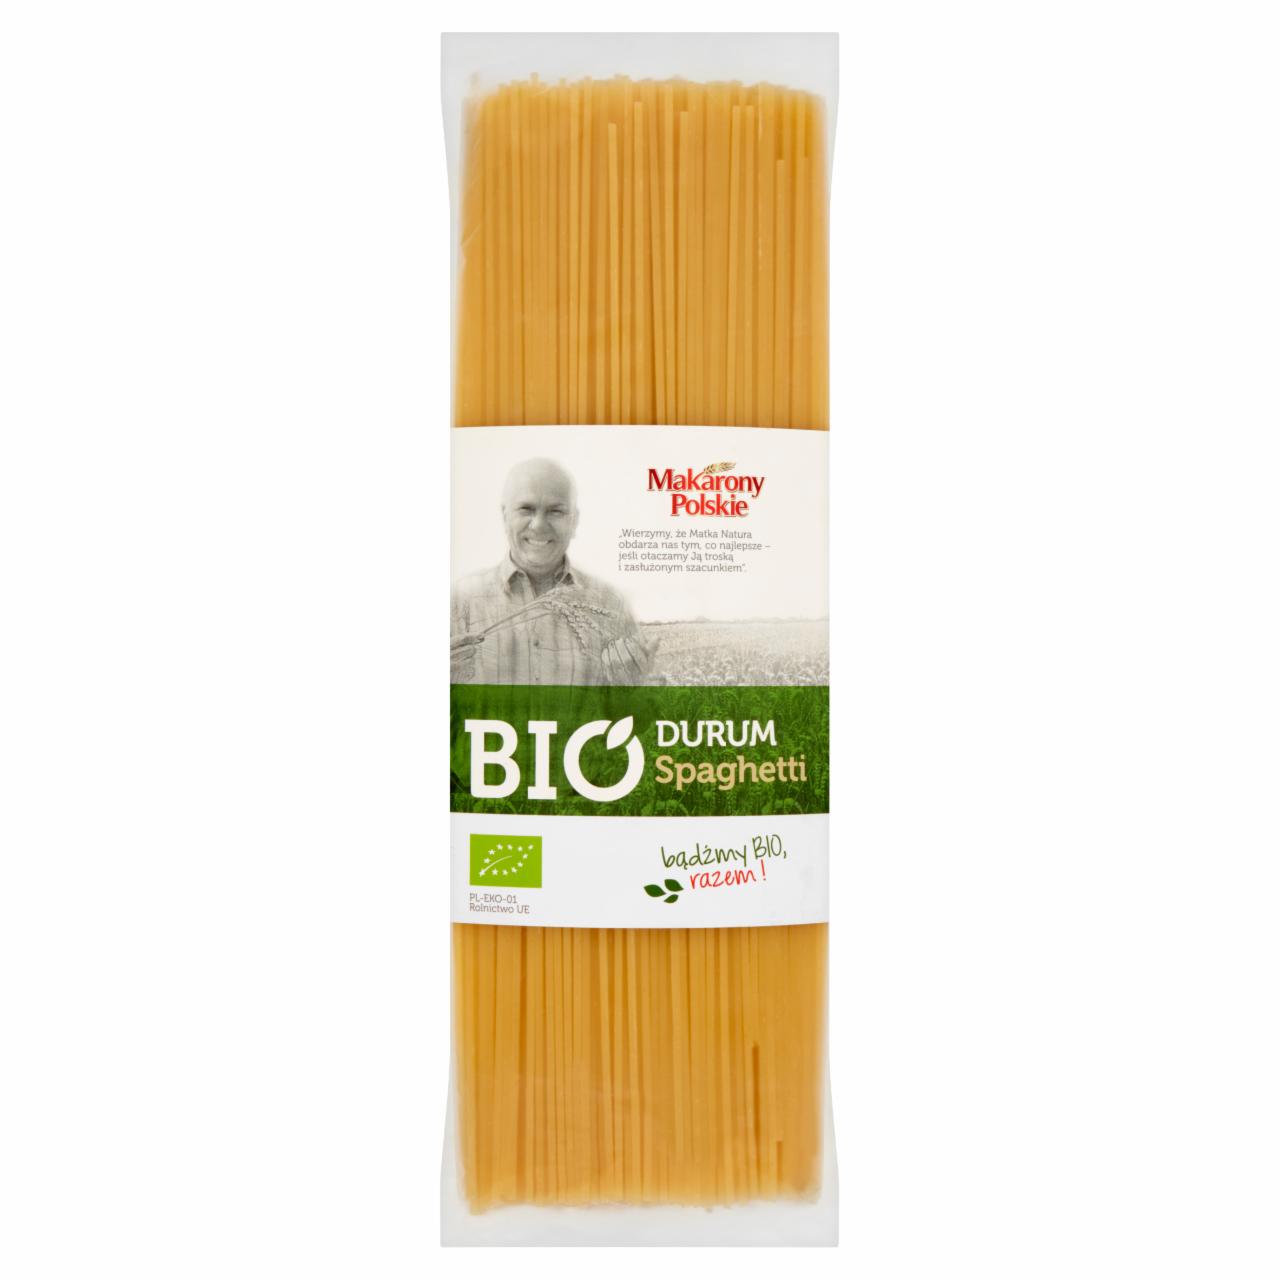 Zdjęcia - Makarony Polskie BIO Makaron durum Spaghetti 400 g